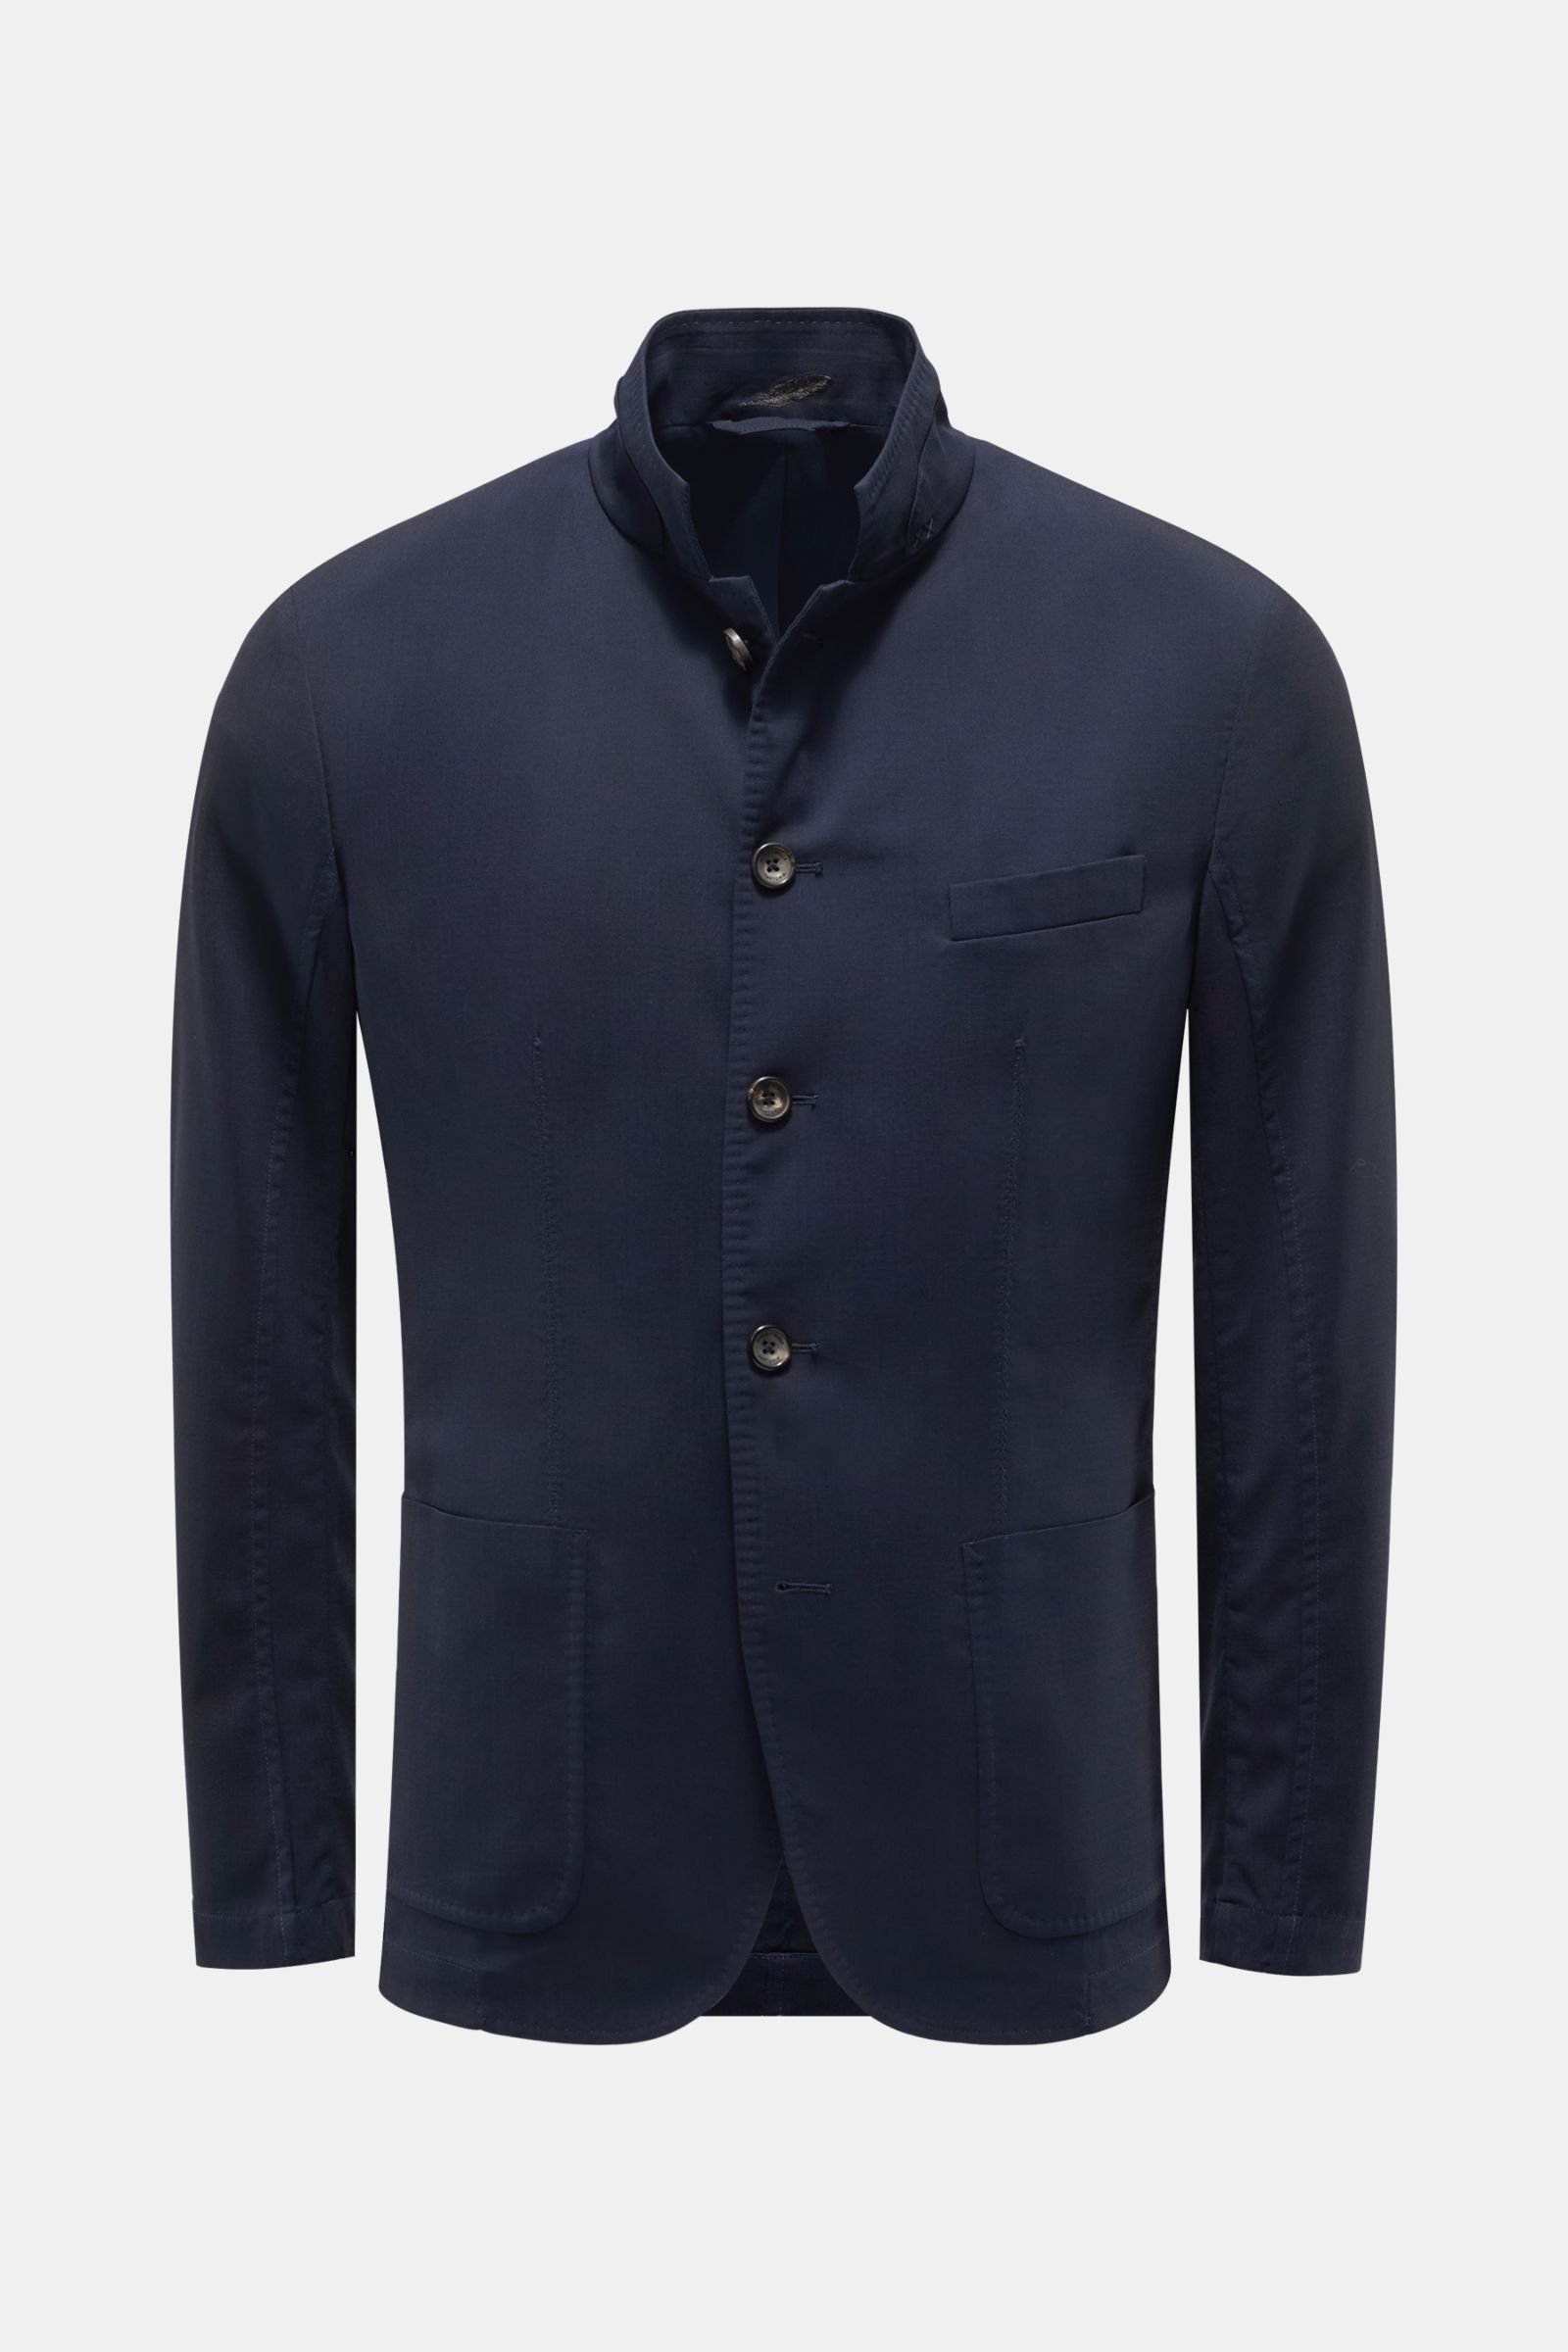 Smart-casual jacket 'Fresco WW Blazer' navy